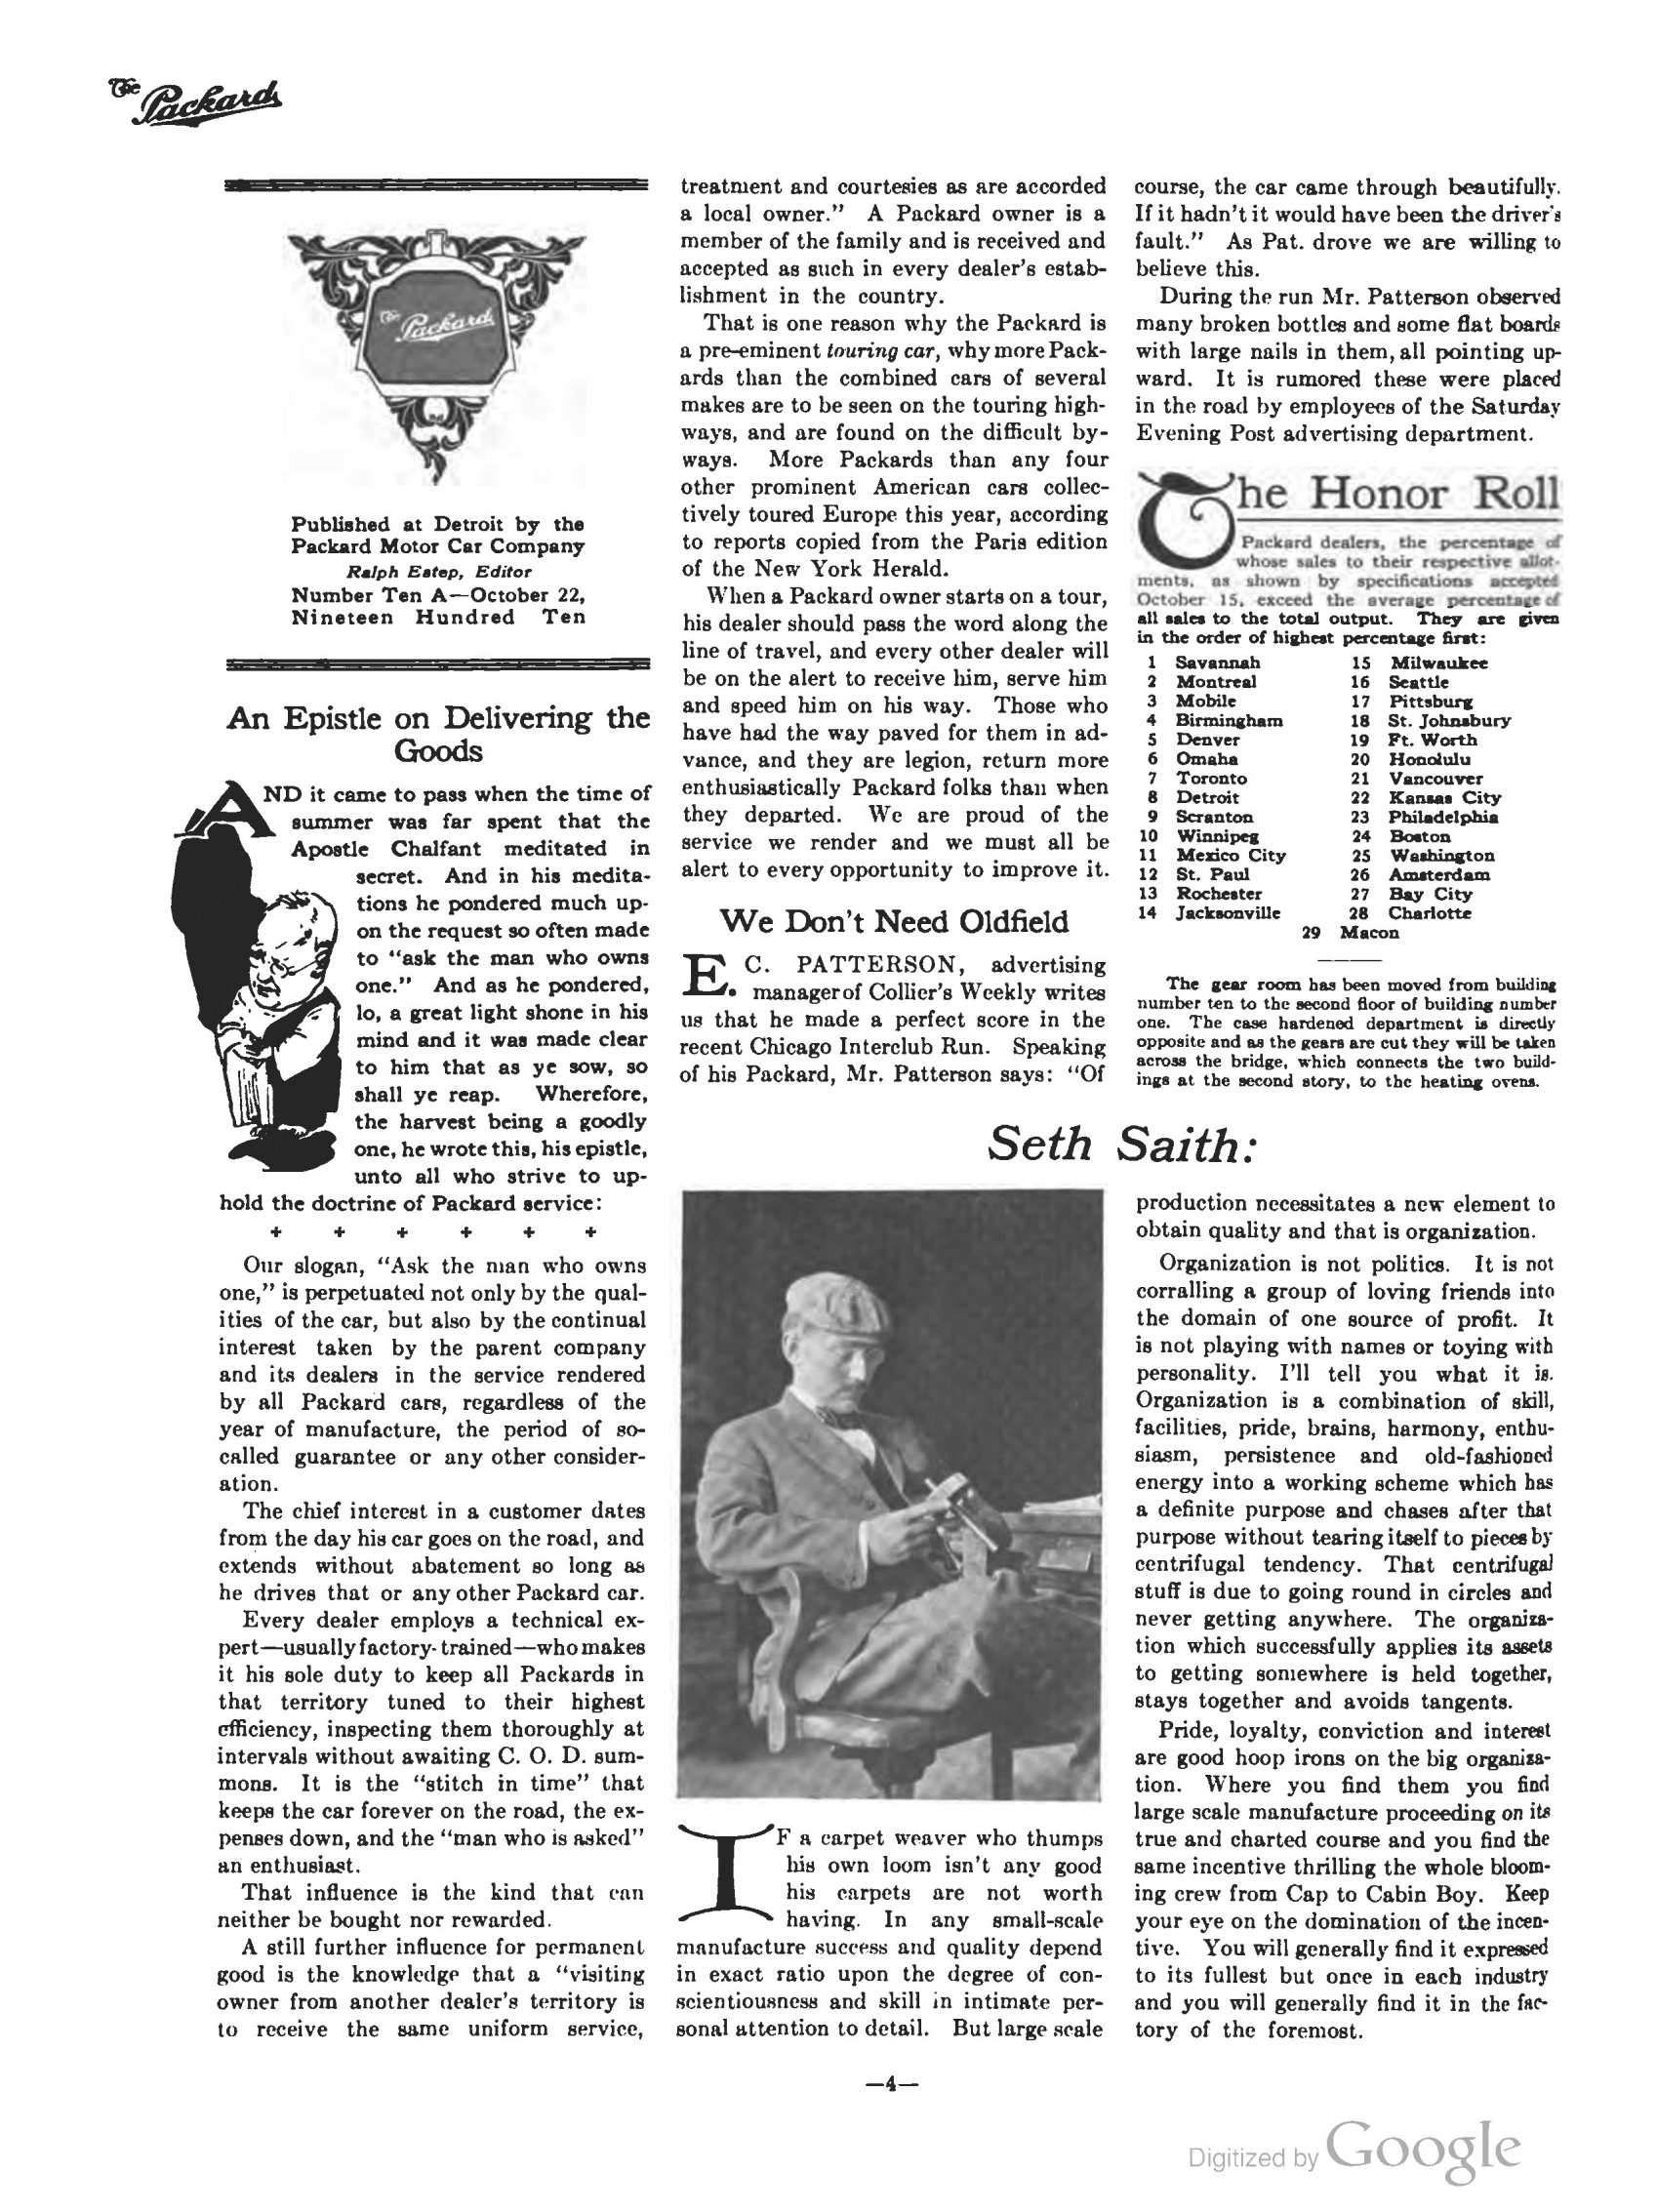 1910_The_Packard_Newsletter-186